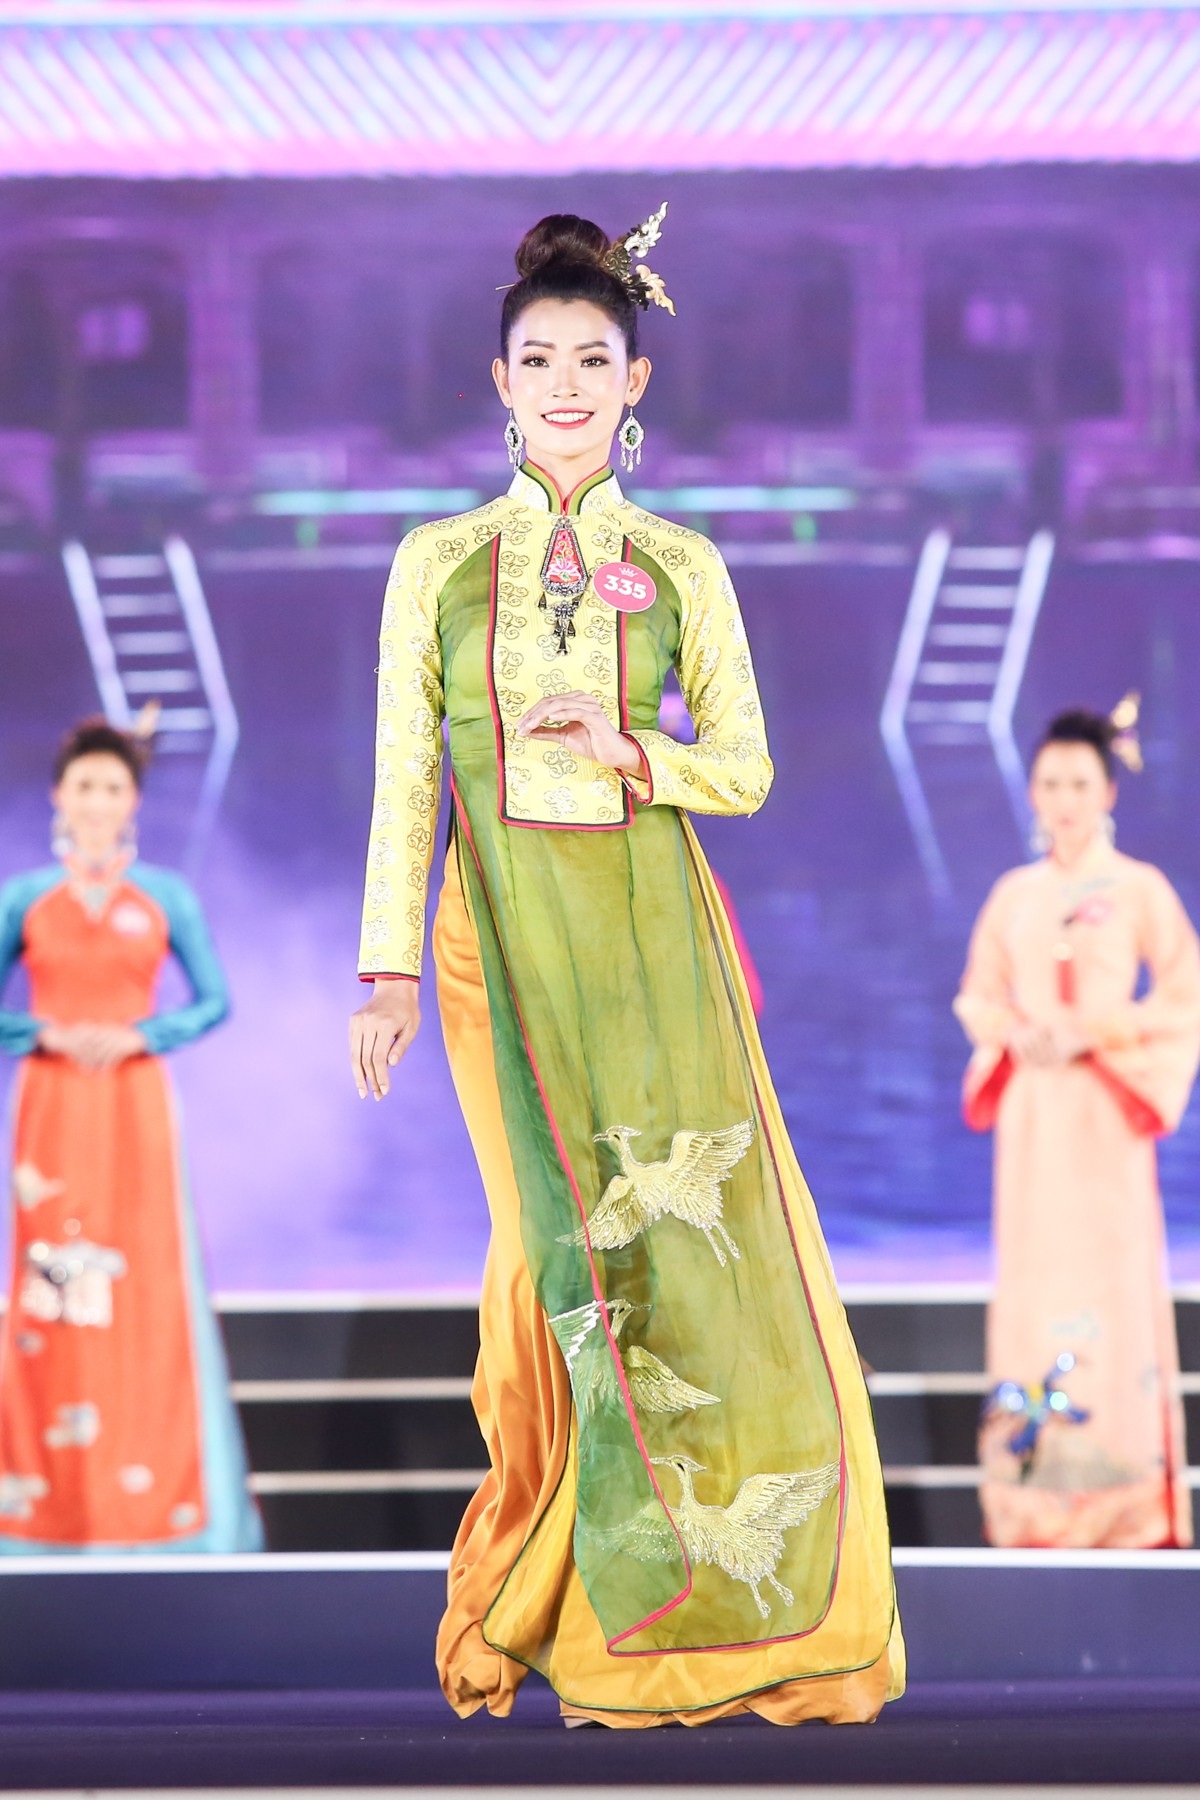 Hoa hậu Bùi Bích Phương diện đầm trễ ngực, “át” cả sự gợi cảm của đàn em - Ảnh 9.